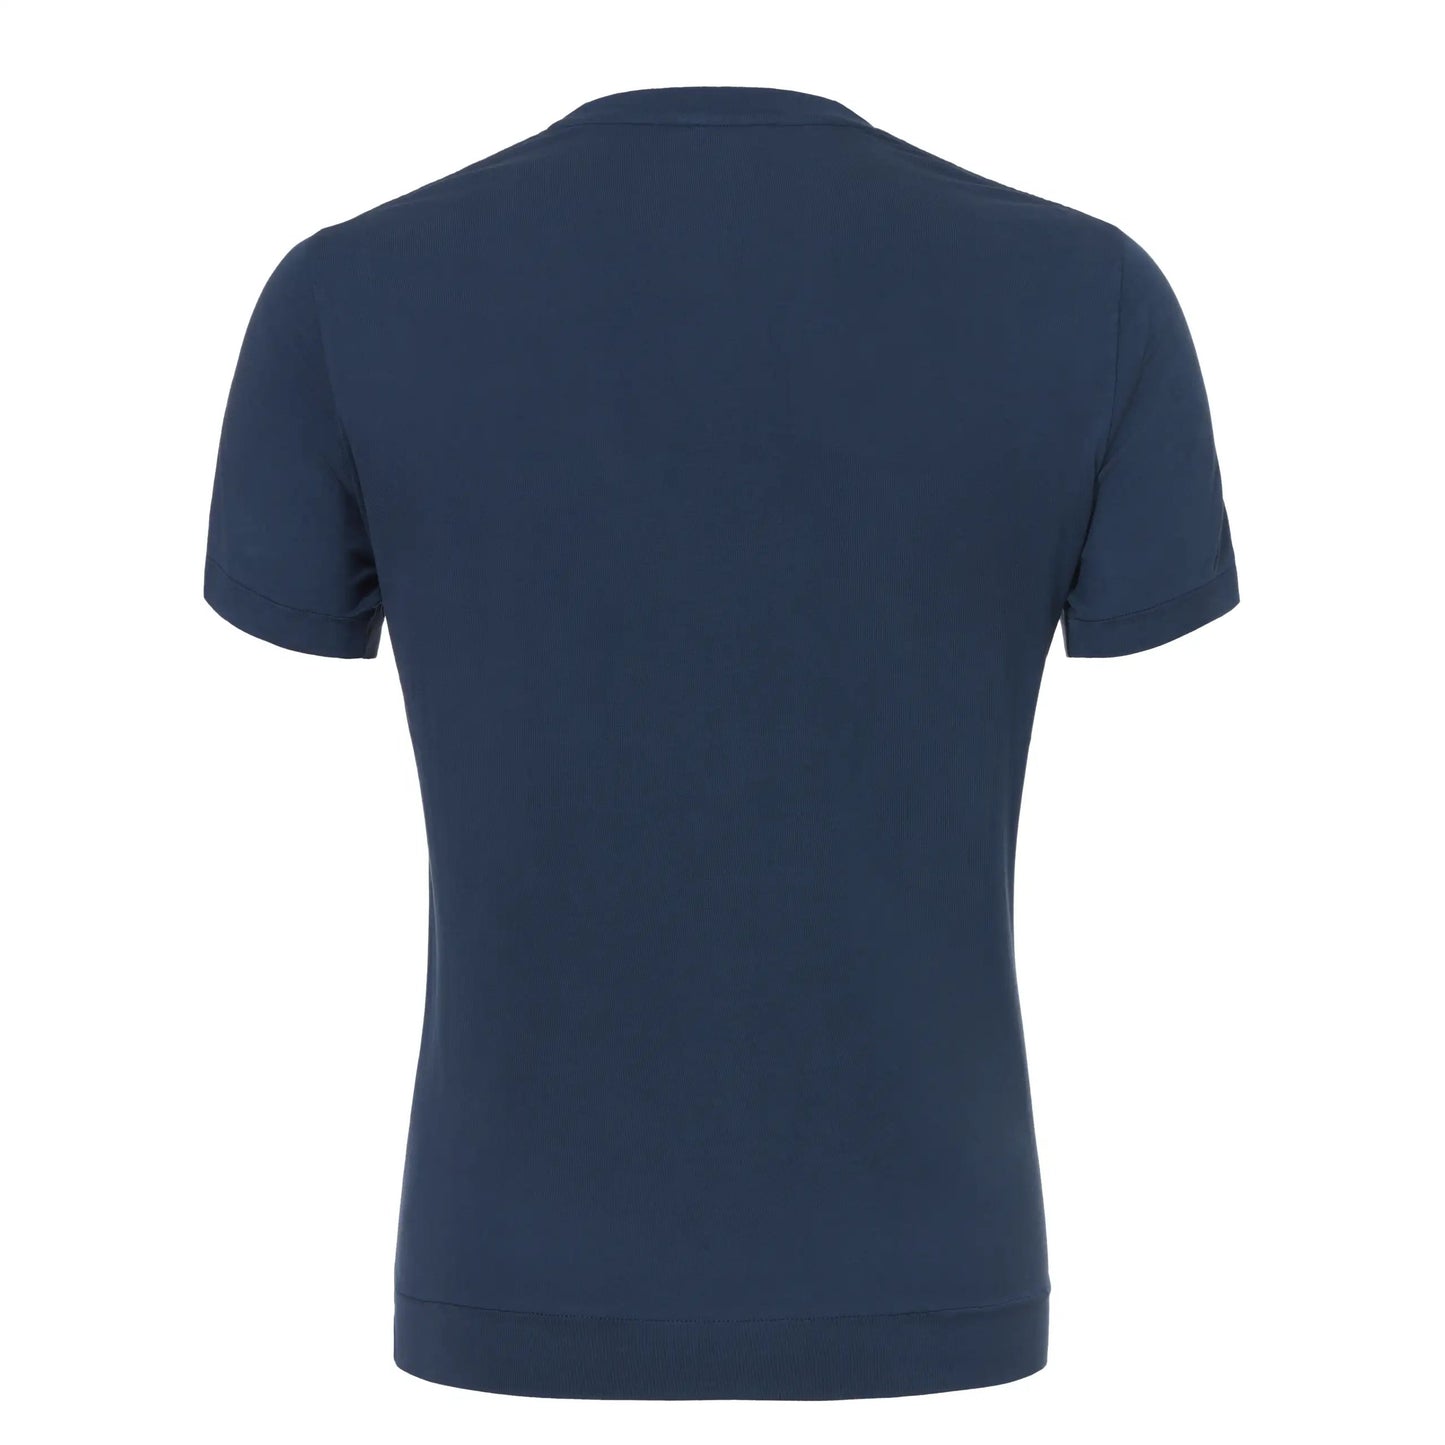 Finamore Cotton Crew-Neck T-Shirt in Dark Blue - SARTALE